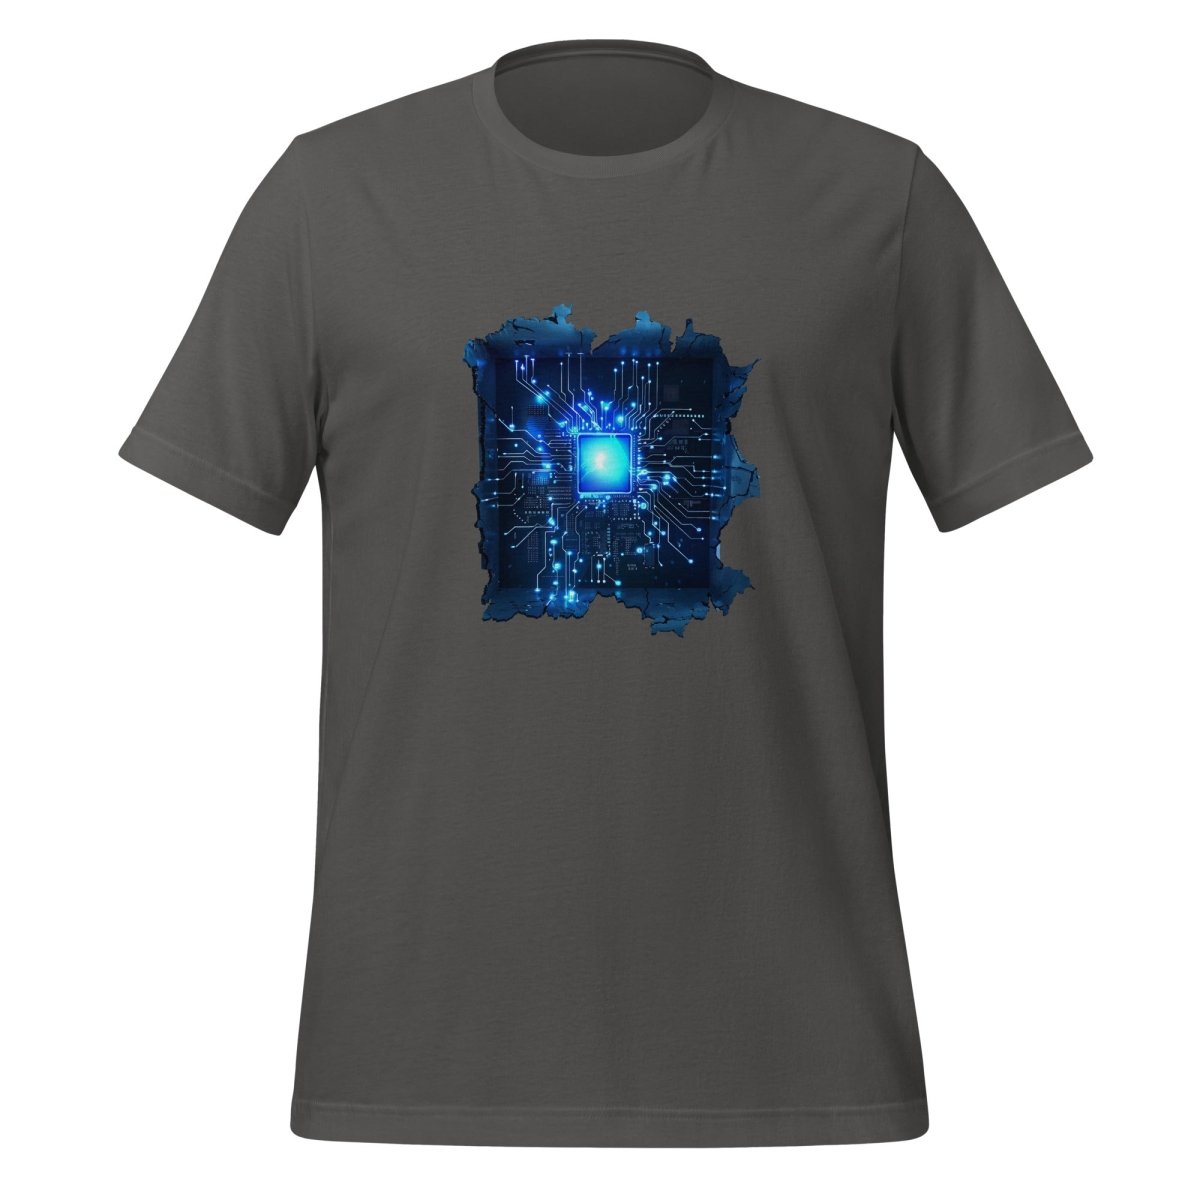 CPU Heart T - Shirt (unisex) - Asphalt - AI Store